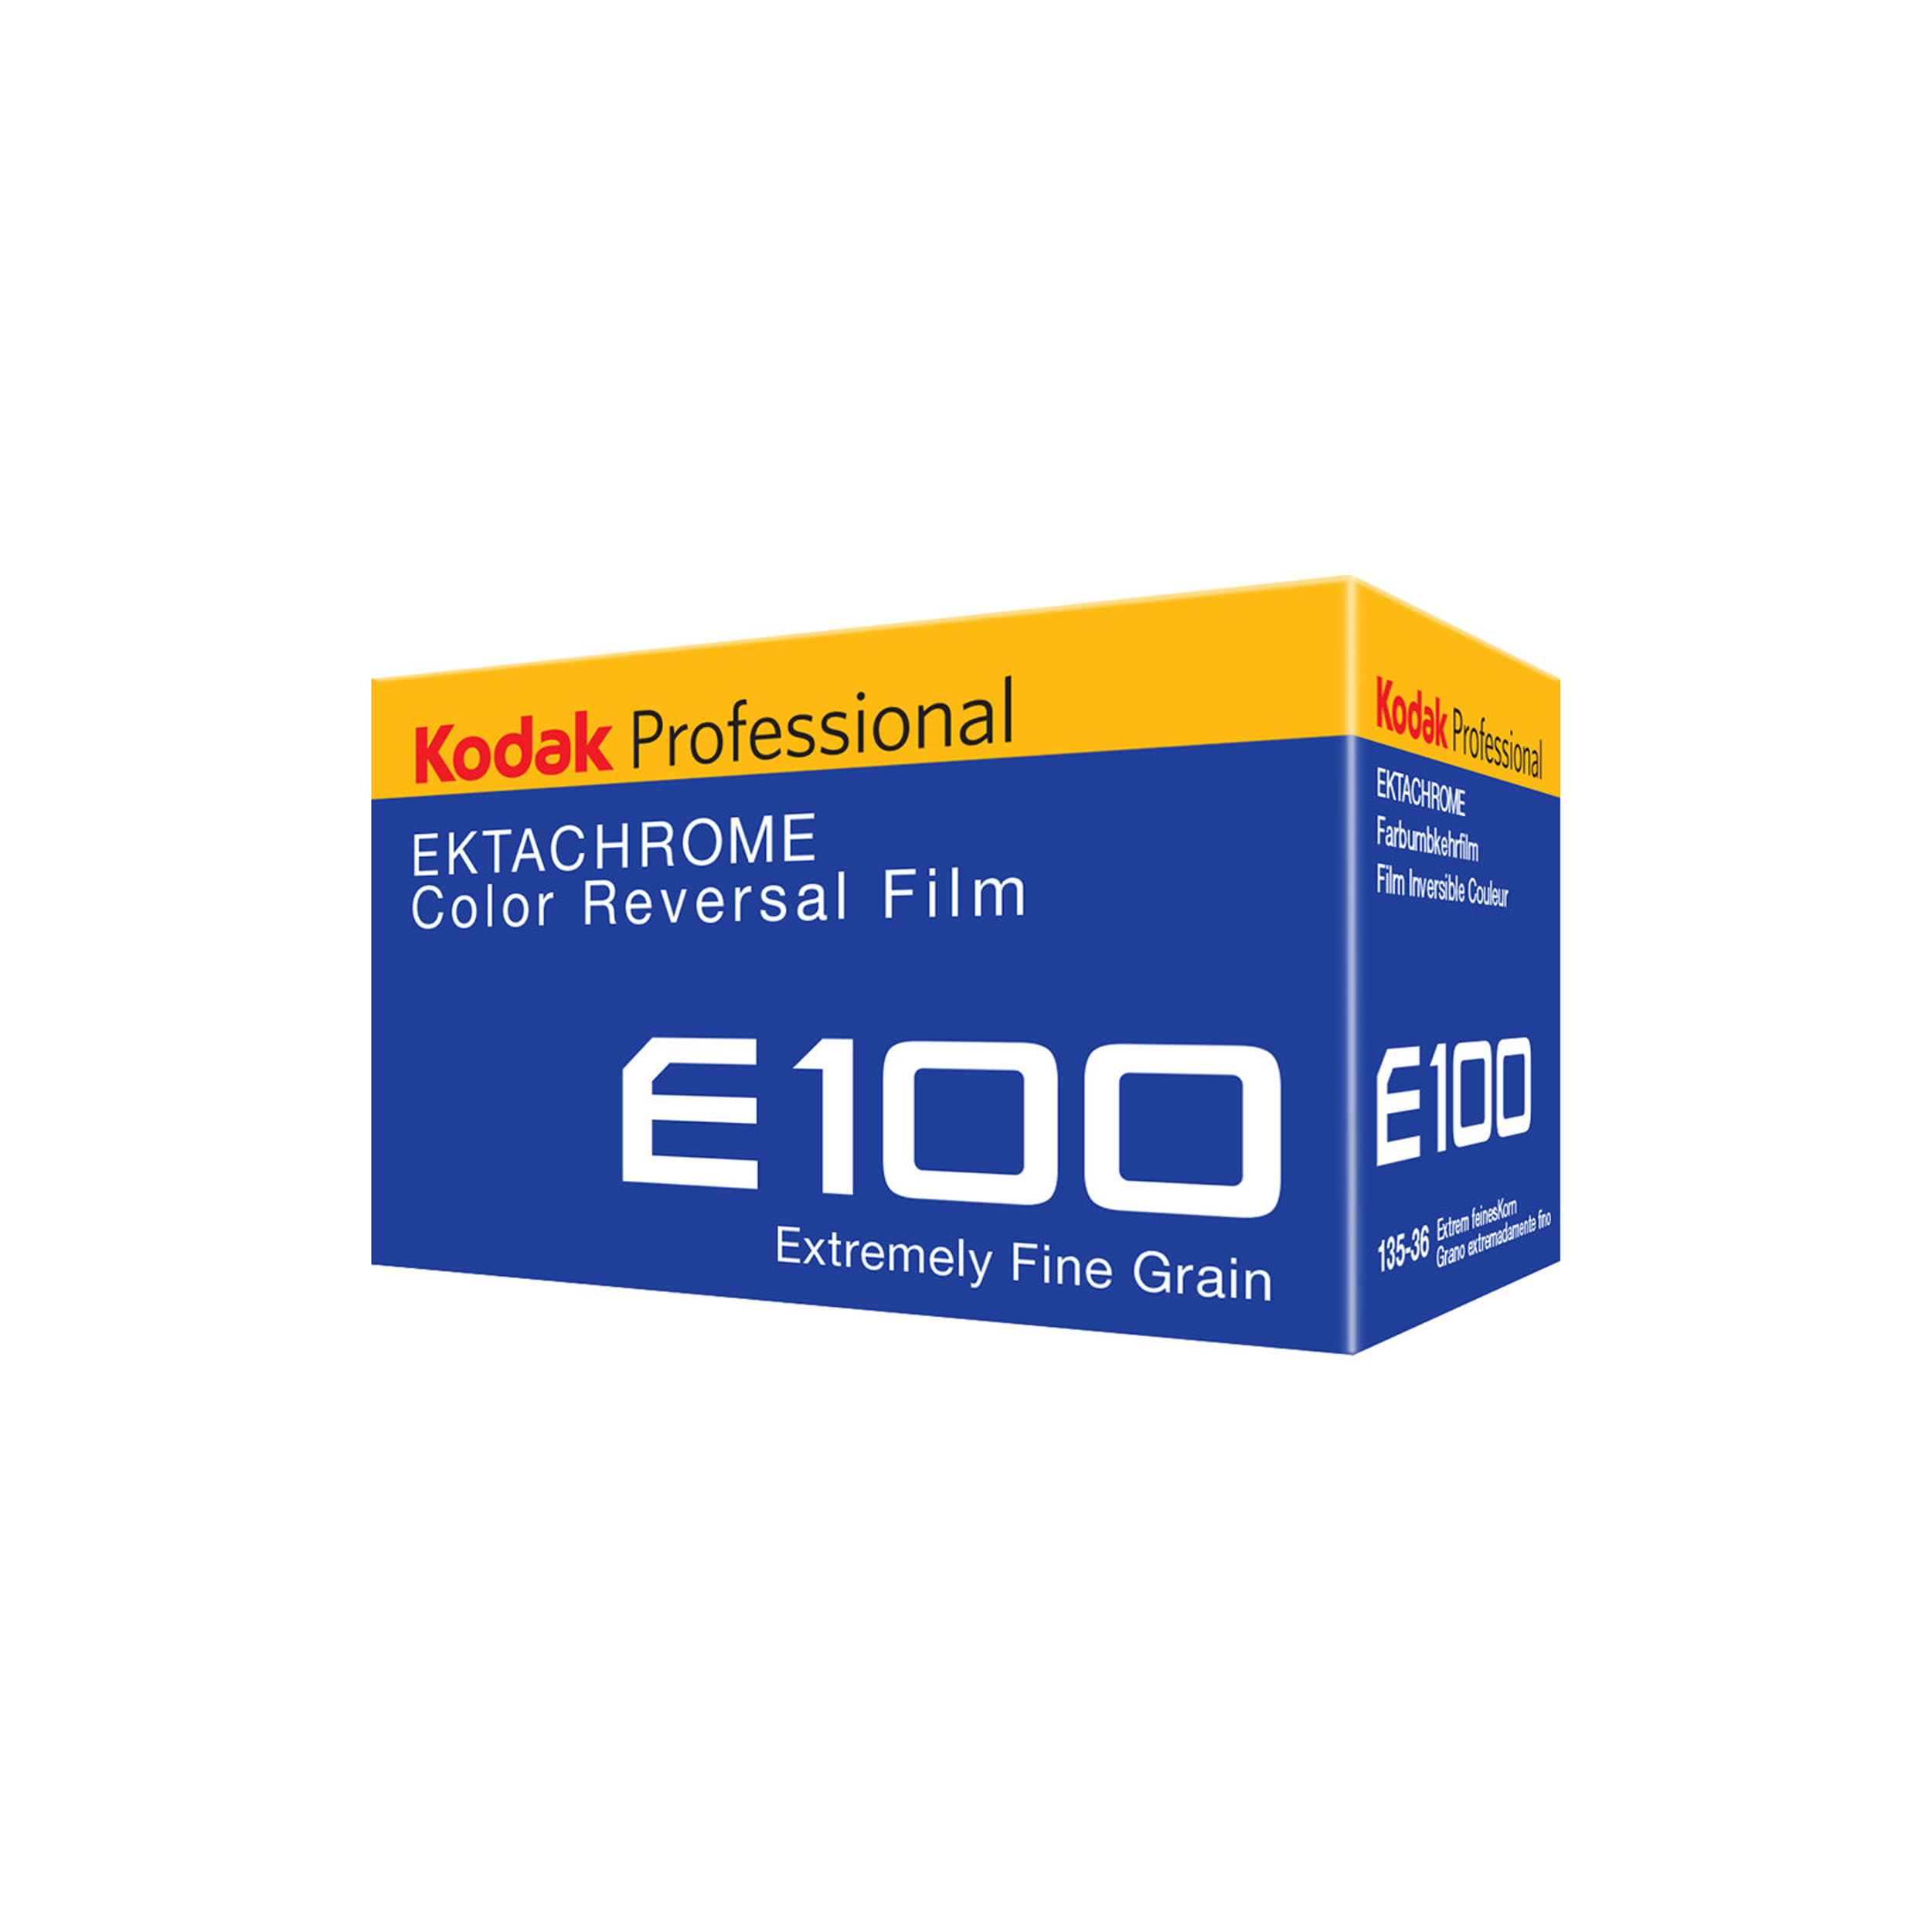 Kodak Professional Ektachrome E100 Film de transparence des couleurs - Film de 35 mm - 36 expositions